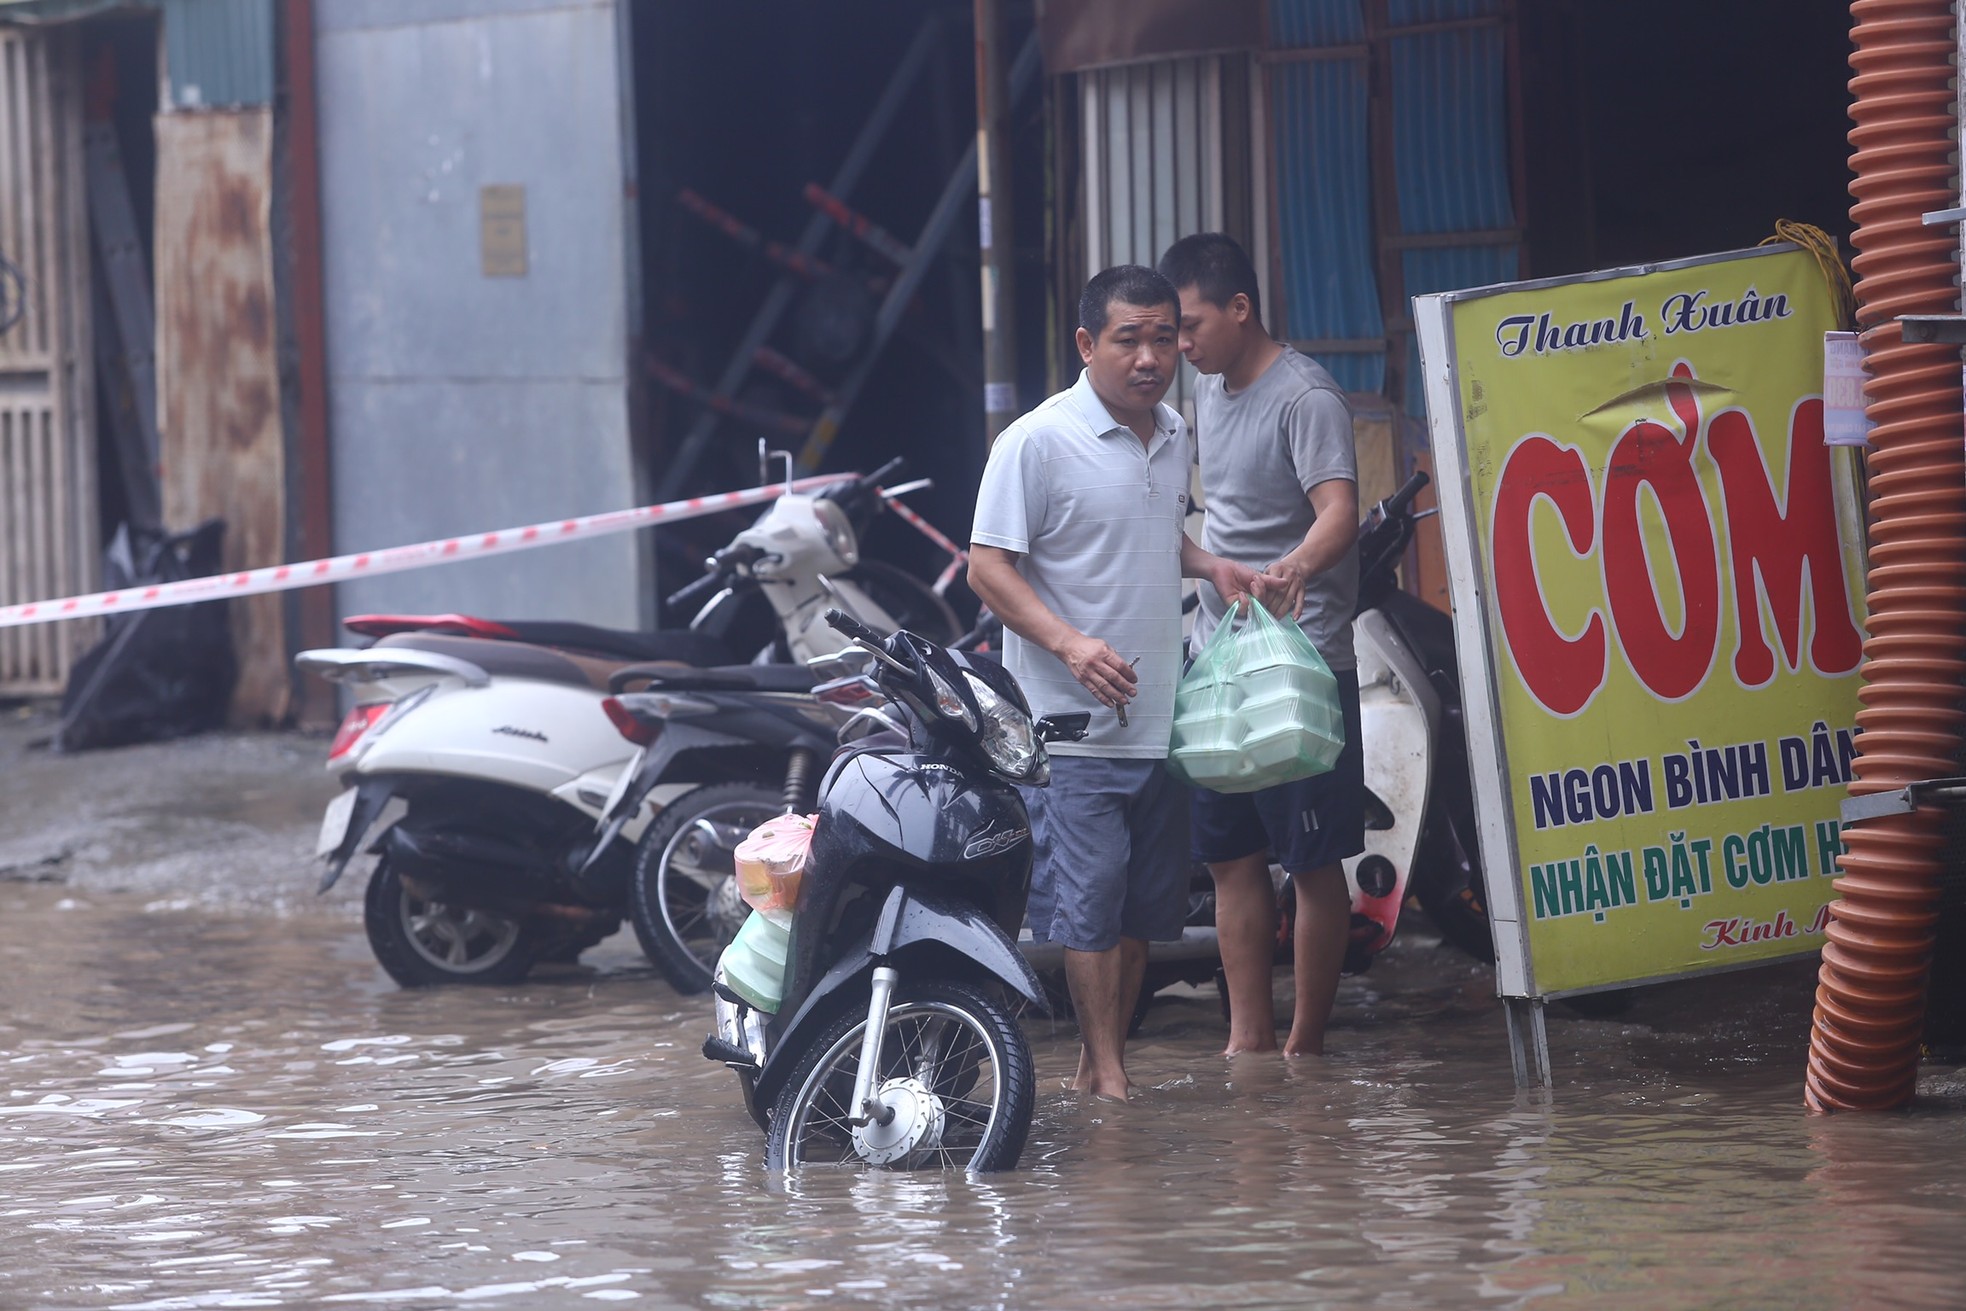 Một con phố ở Thủ đô vẫn chìm trong 'biển nước' sau một ngày mưa lớn - Ảnh 5.